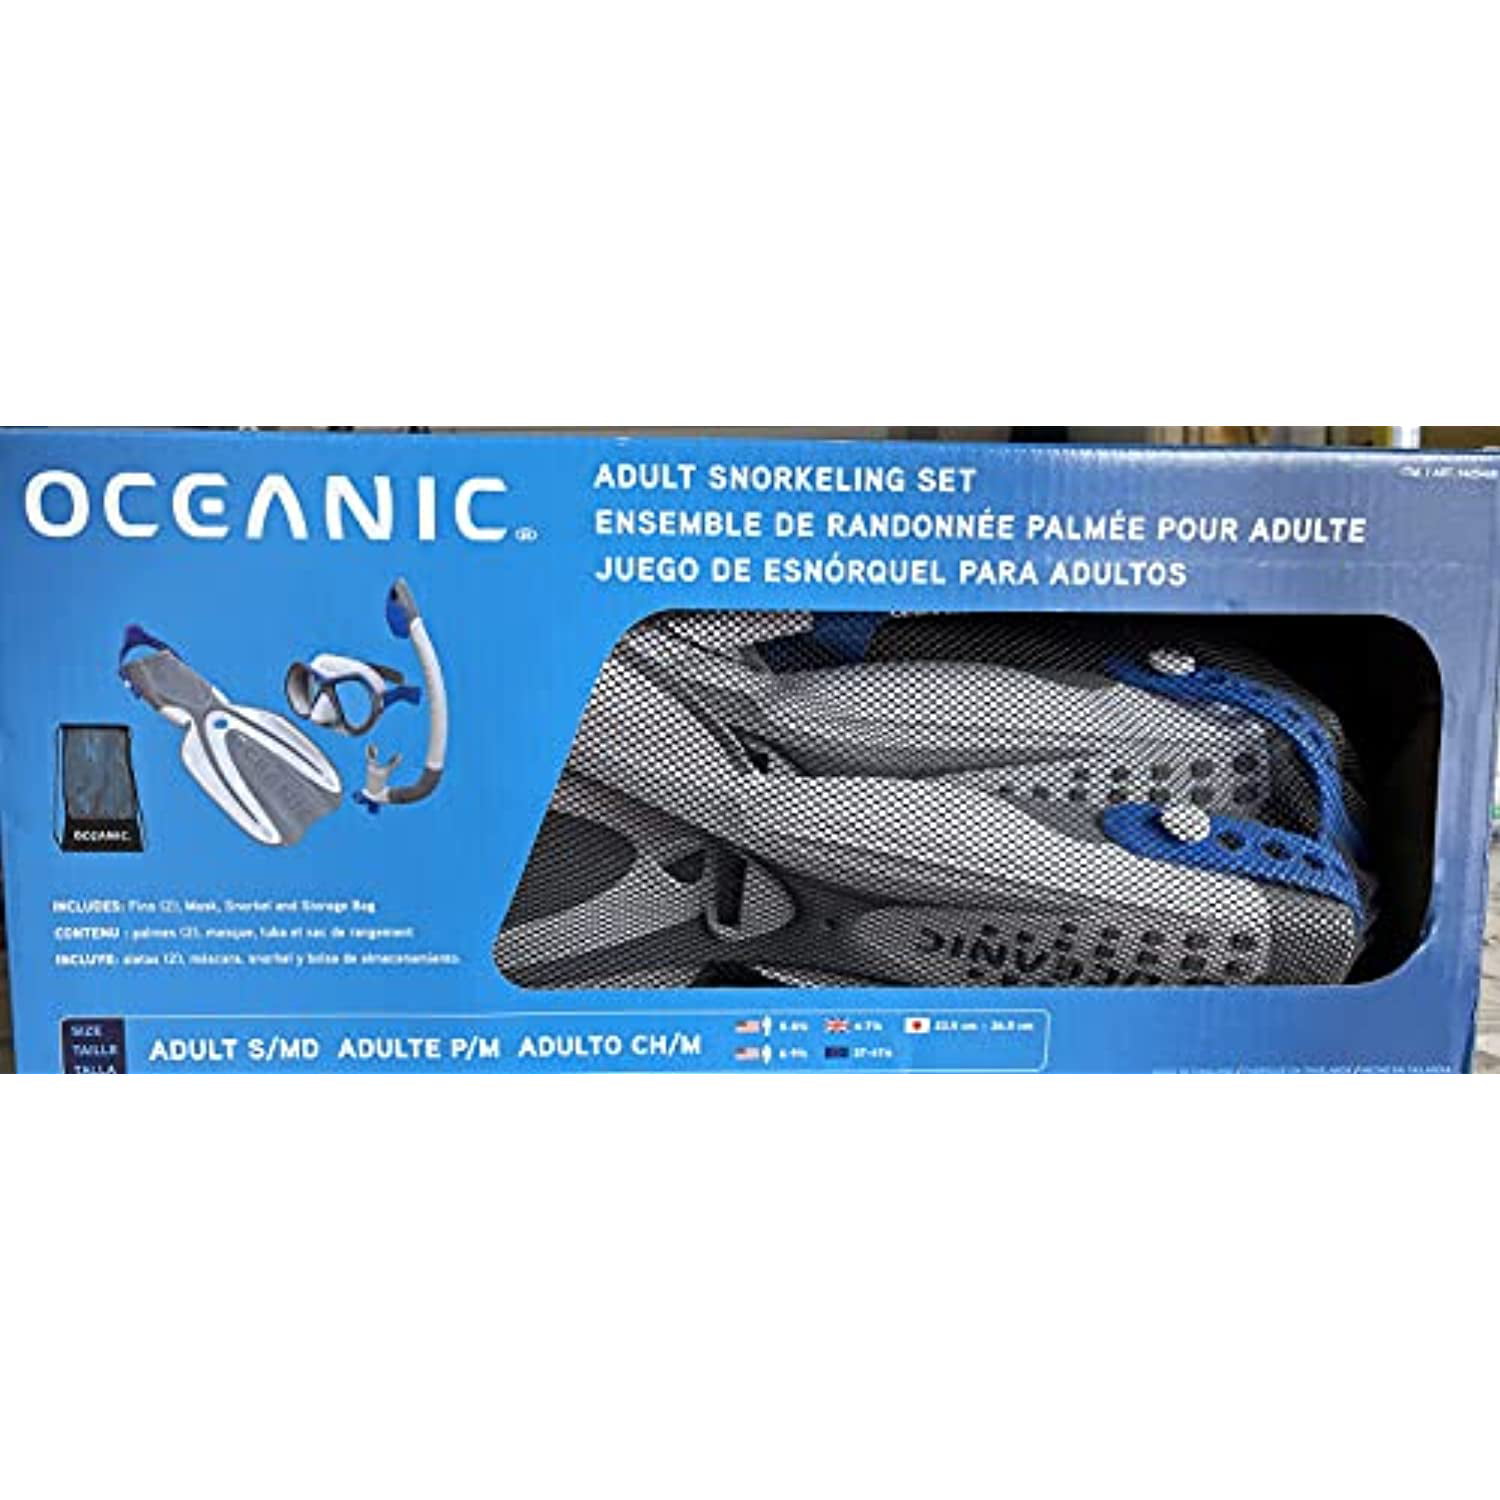 Oceanic Adult Snorkeling Set 2 Fins Mask Snorkel and Storage OB for sale online 